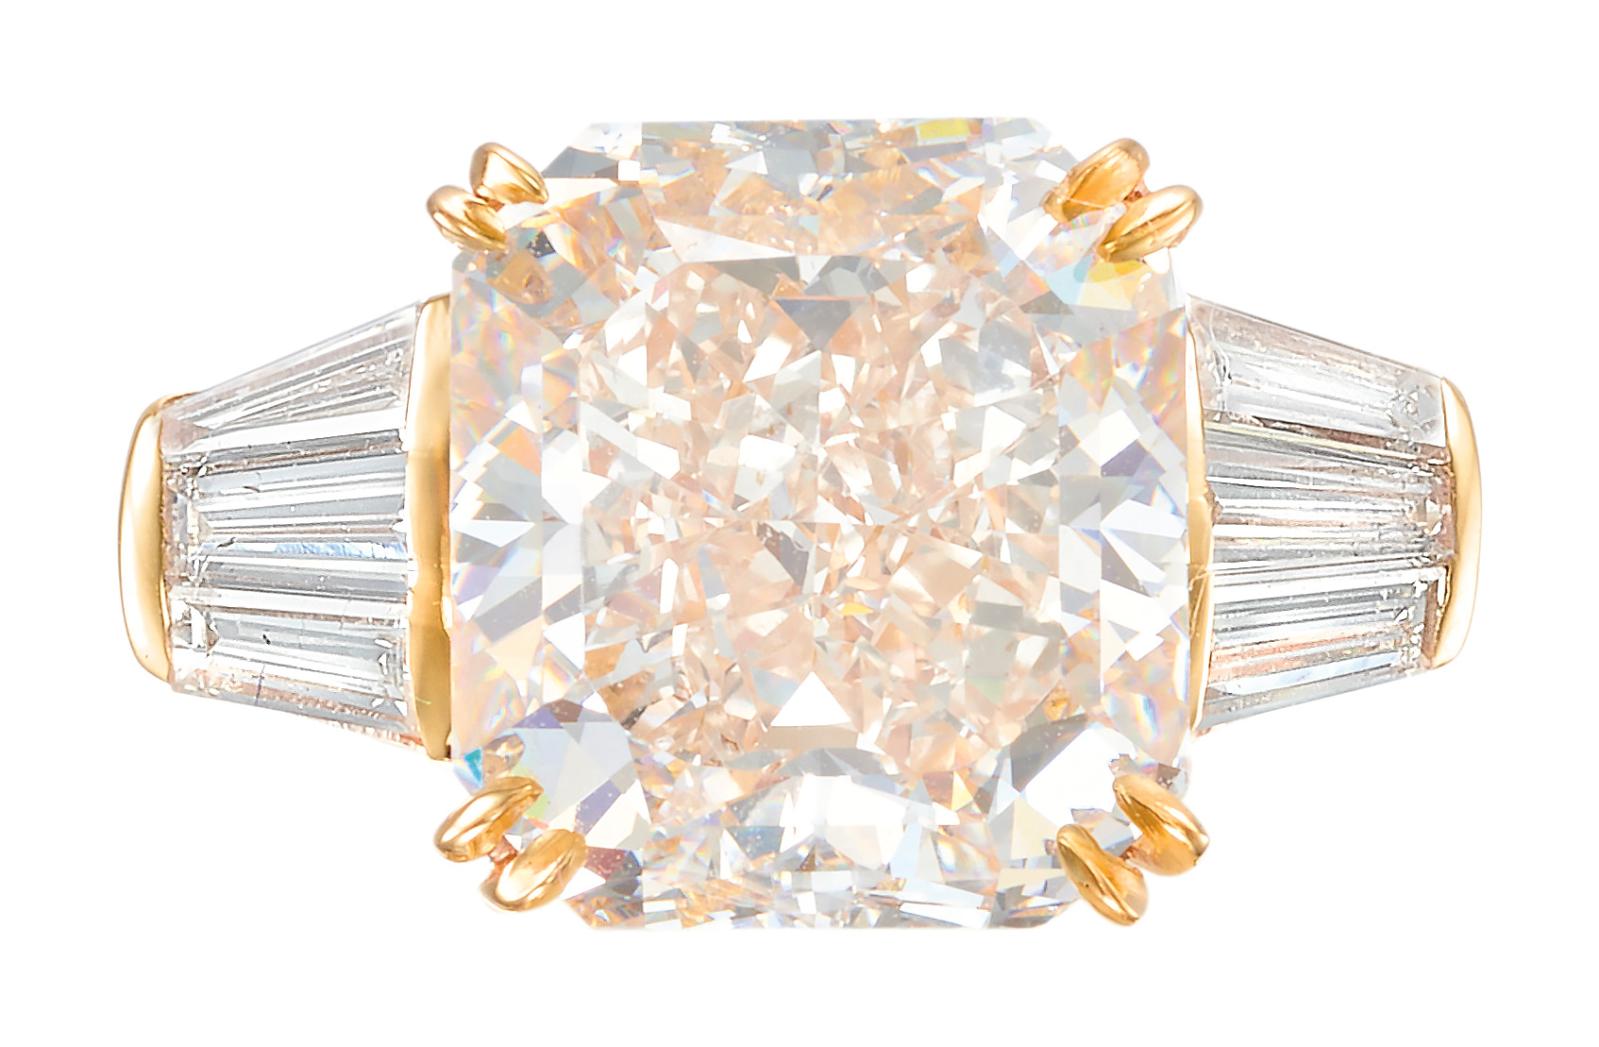 Le plus spectaculaire des bijoux proposés le mardi 16 août s’est révélé cette bague surmontée d’un diamant rose de 8,07 ct, qualifié de «V